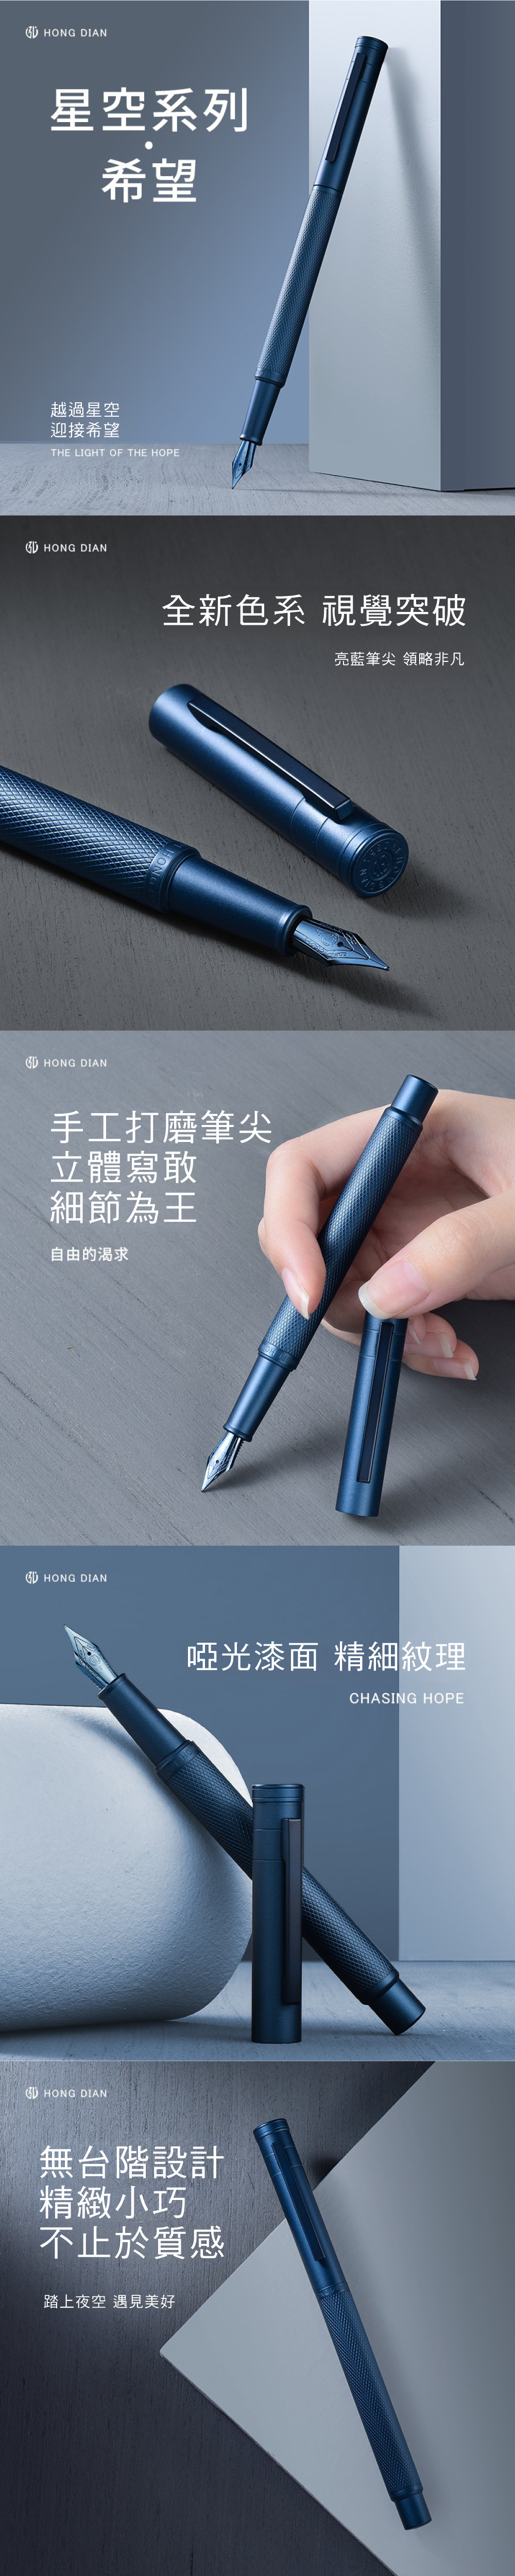 弘典 鋼筆 藍色 鋼筆